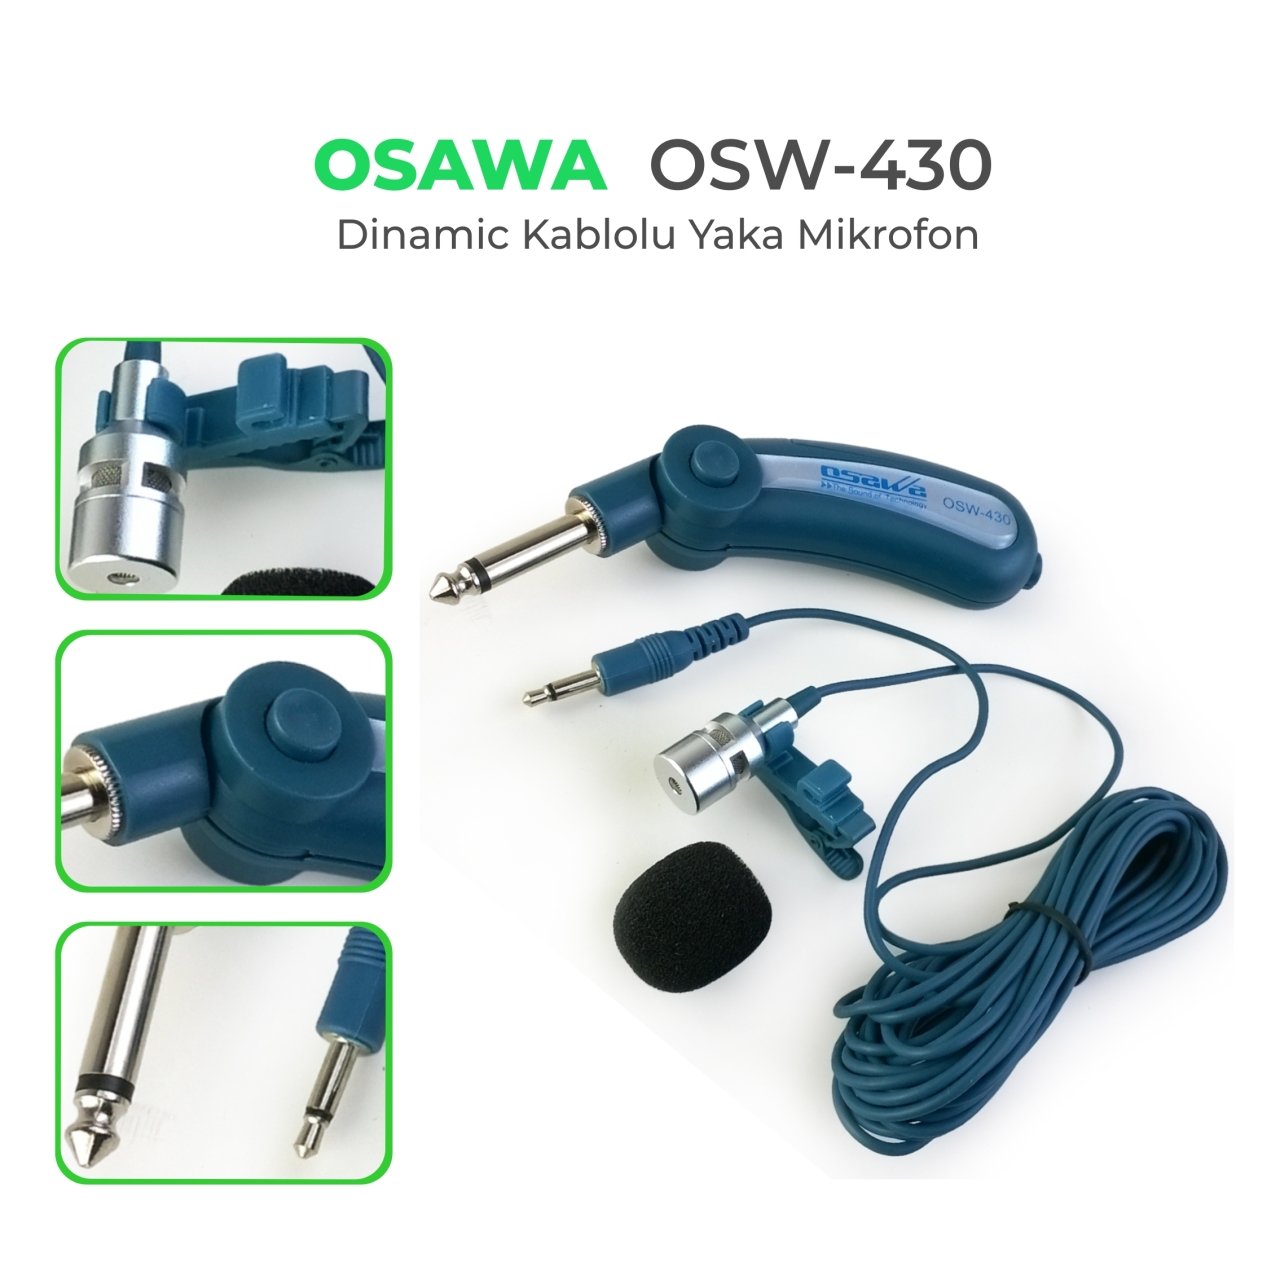 OSAWA OSW-430 Kablolu Yaka Mikrofonu